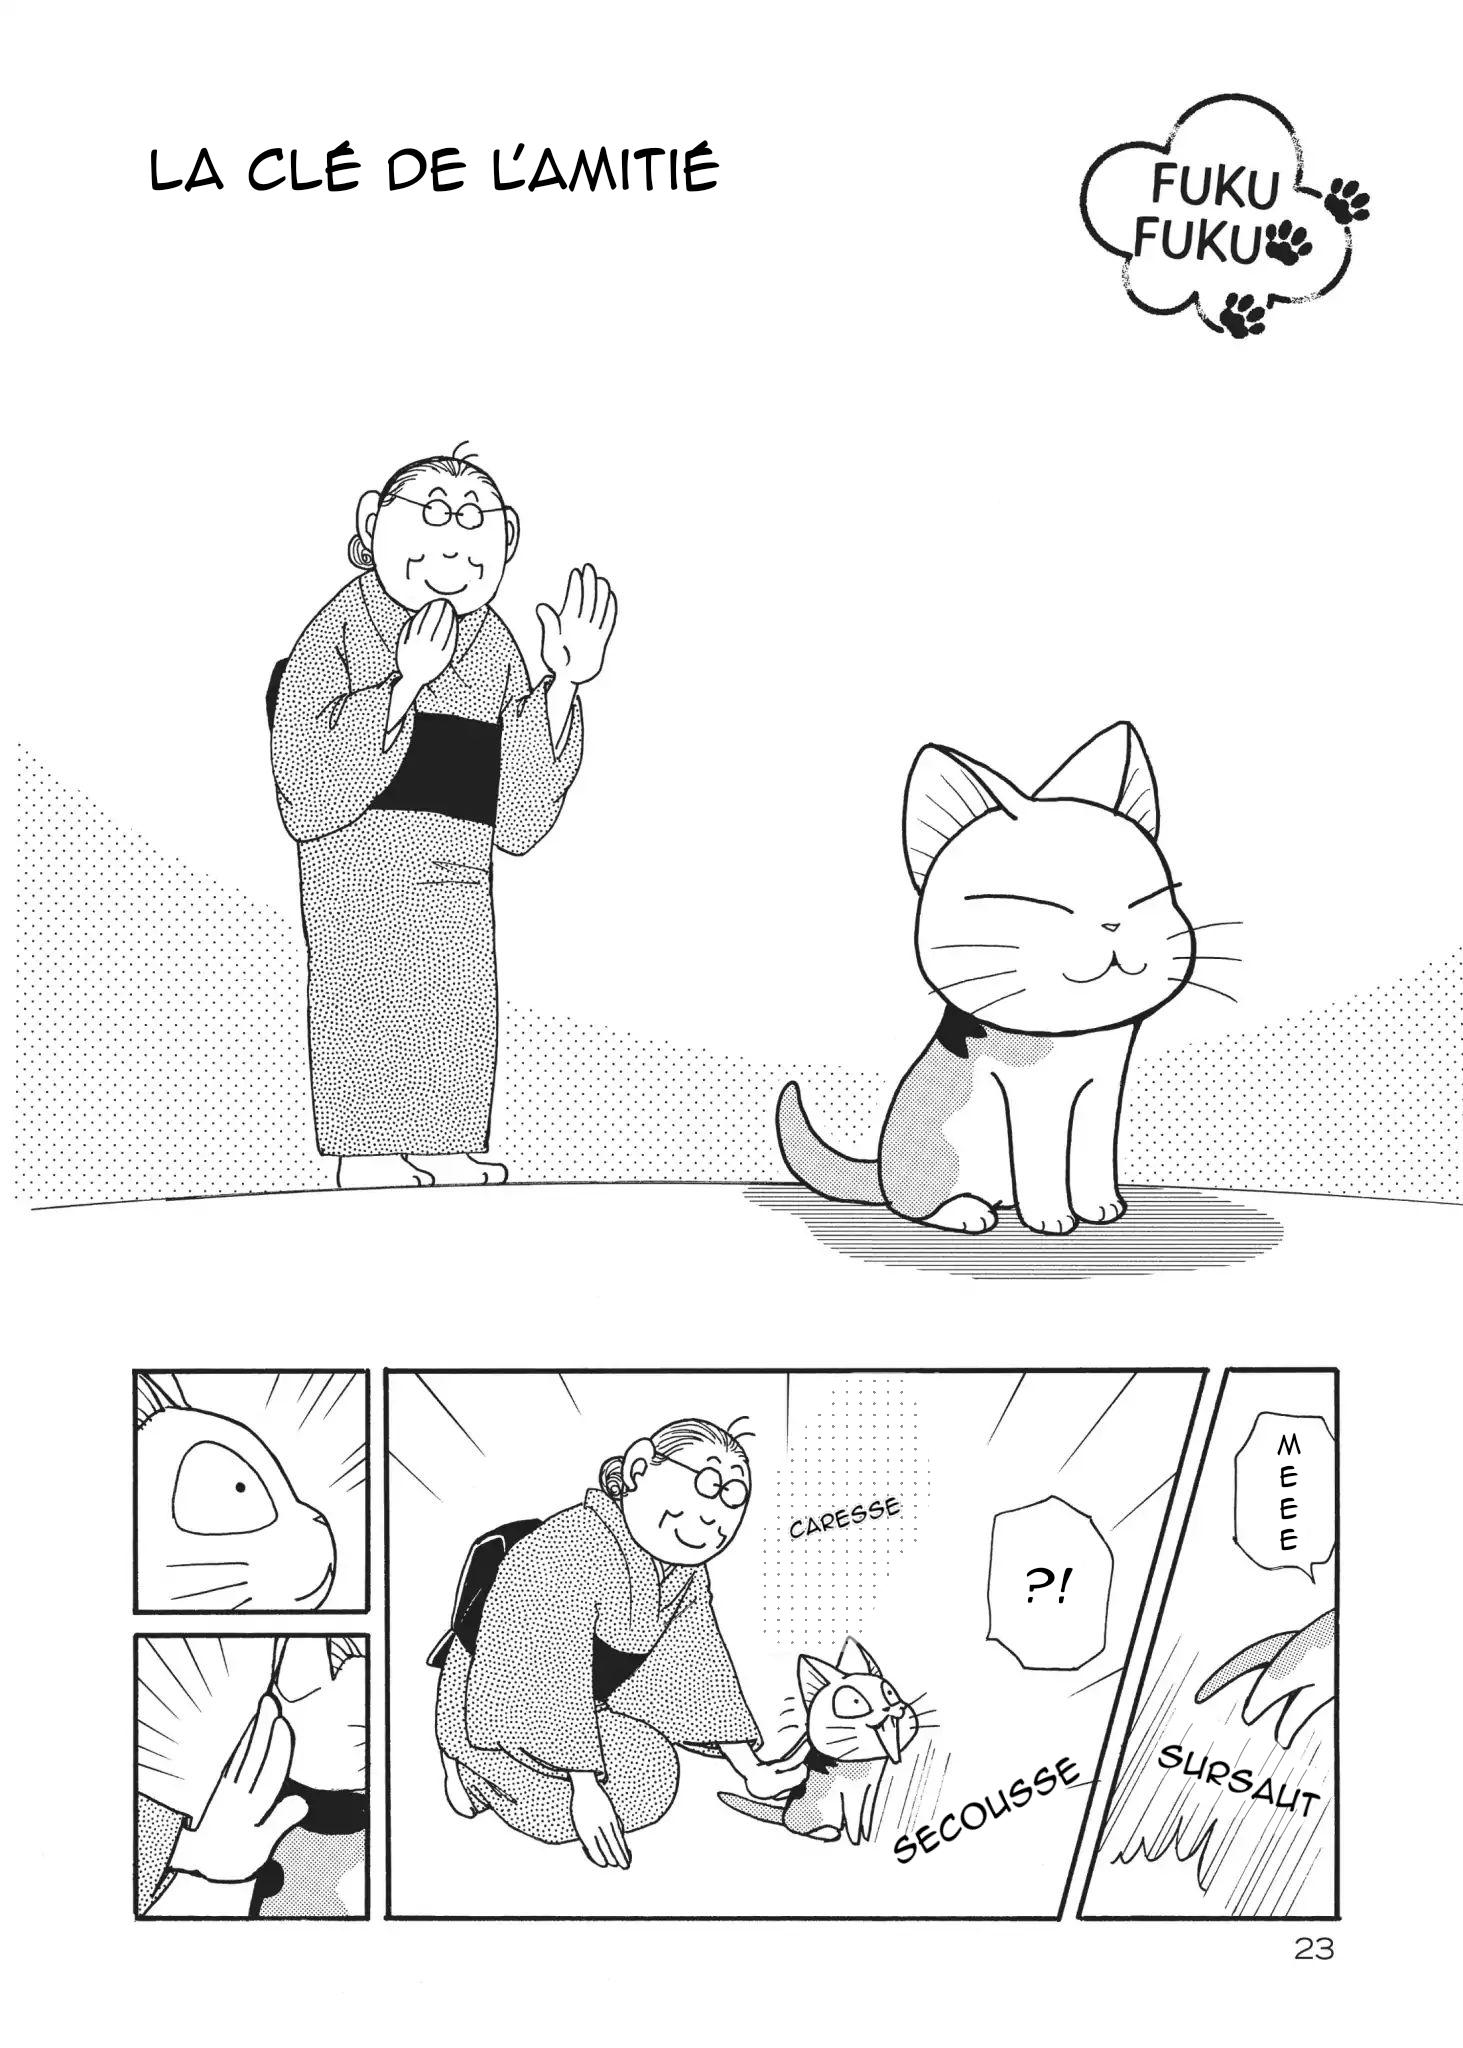 FukuFuku: Kitten Tales: Chapter 4 - Page 1